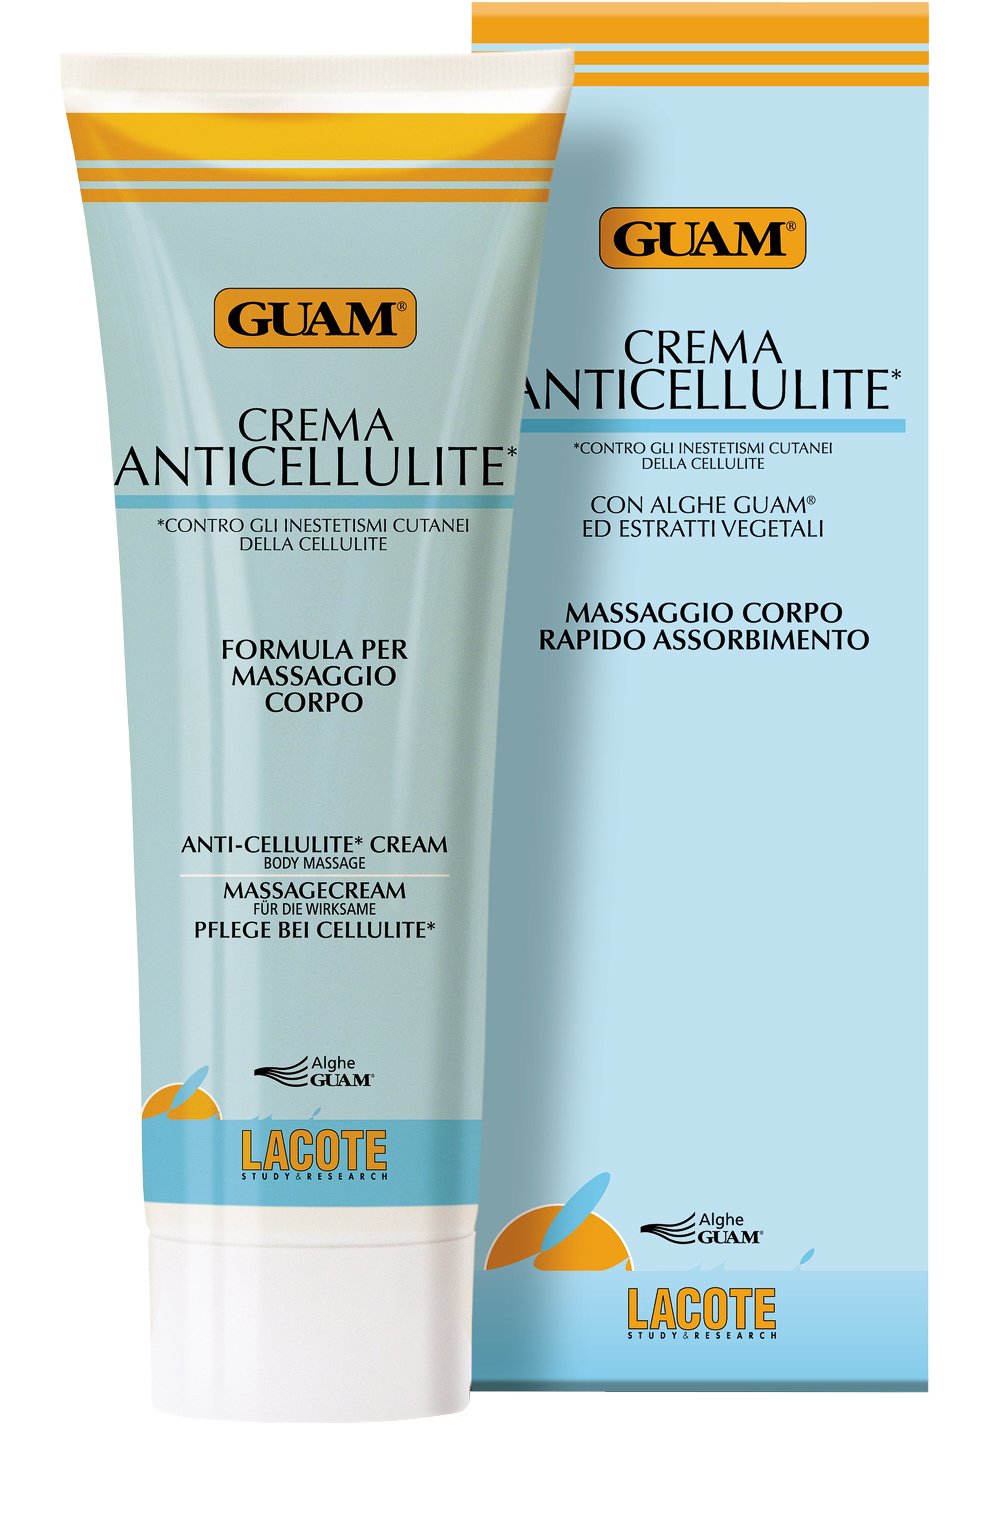 Крем для тела Guam Anti-Cellulite антицеллюлитный, для массажа, 250 мл витэкс крем массажный антицеллюлитный баня сауна массаж 200